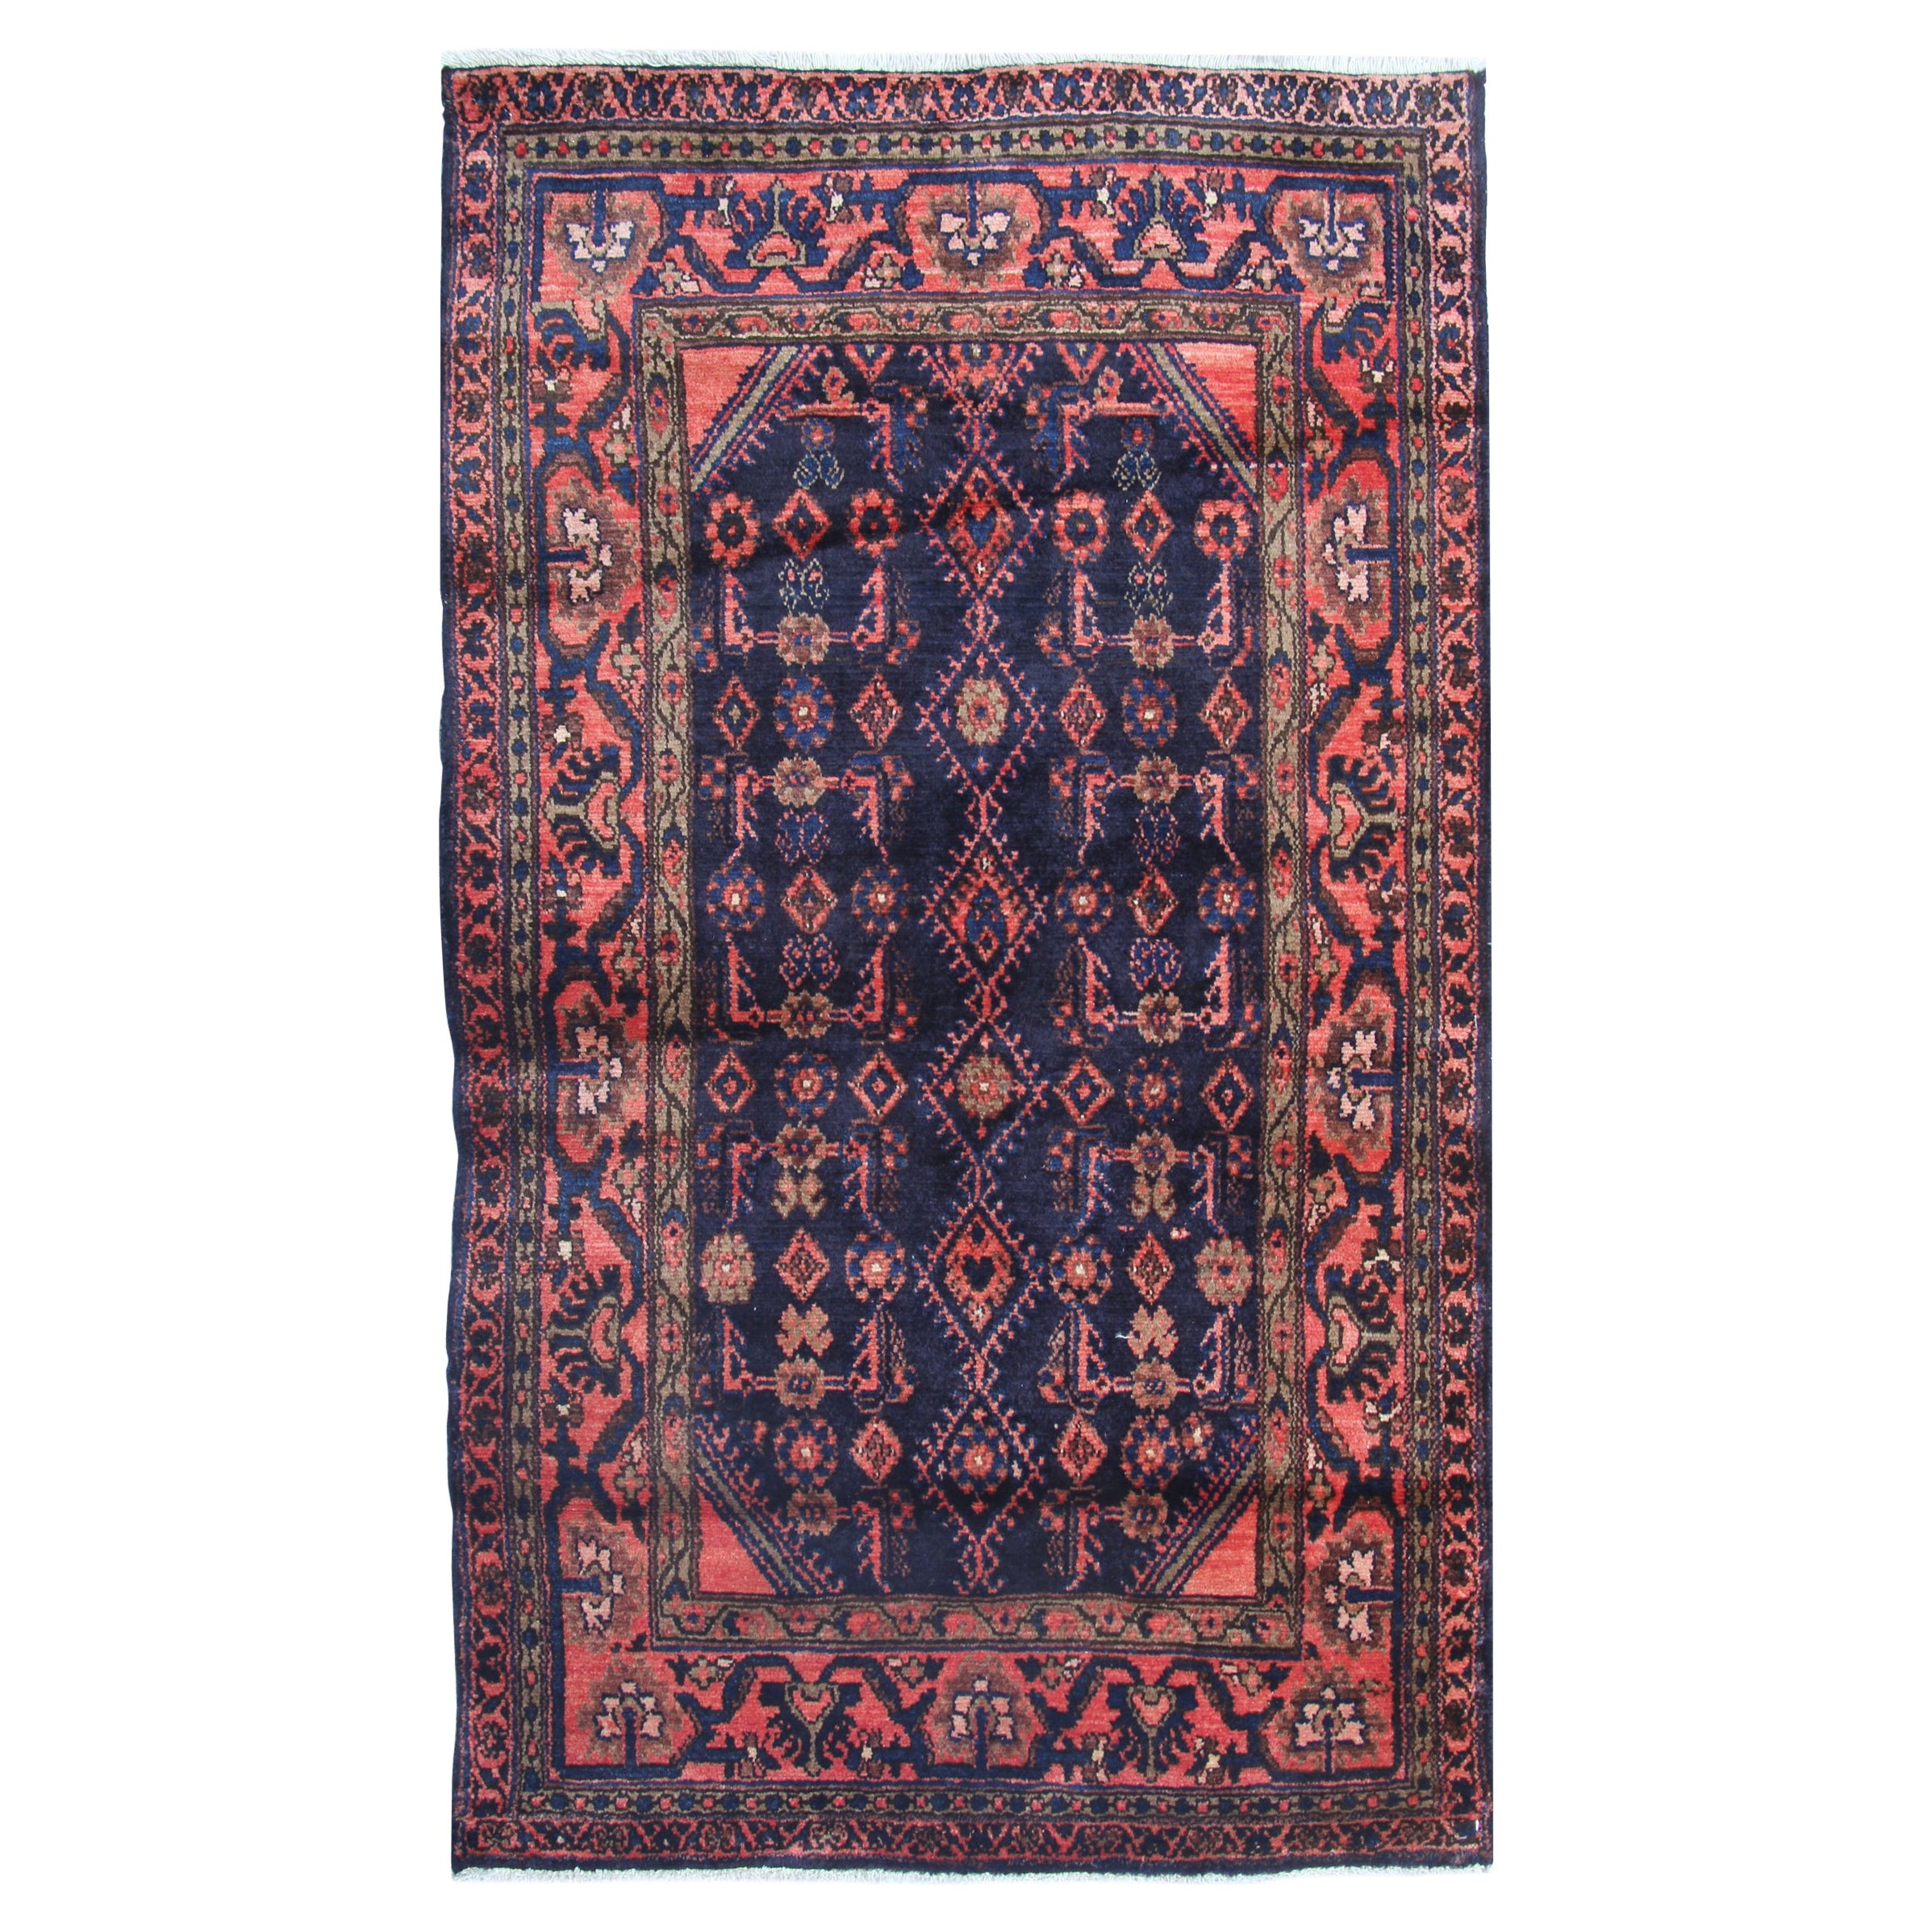 Vintage Tribal Rug, Handmade Oriental Wool Carpet Rug Geometric